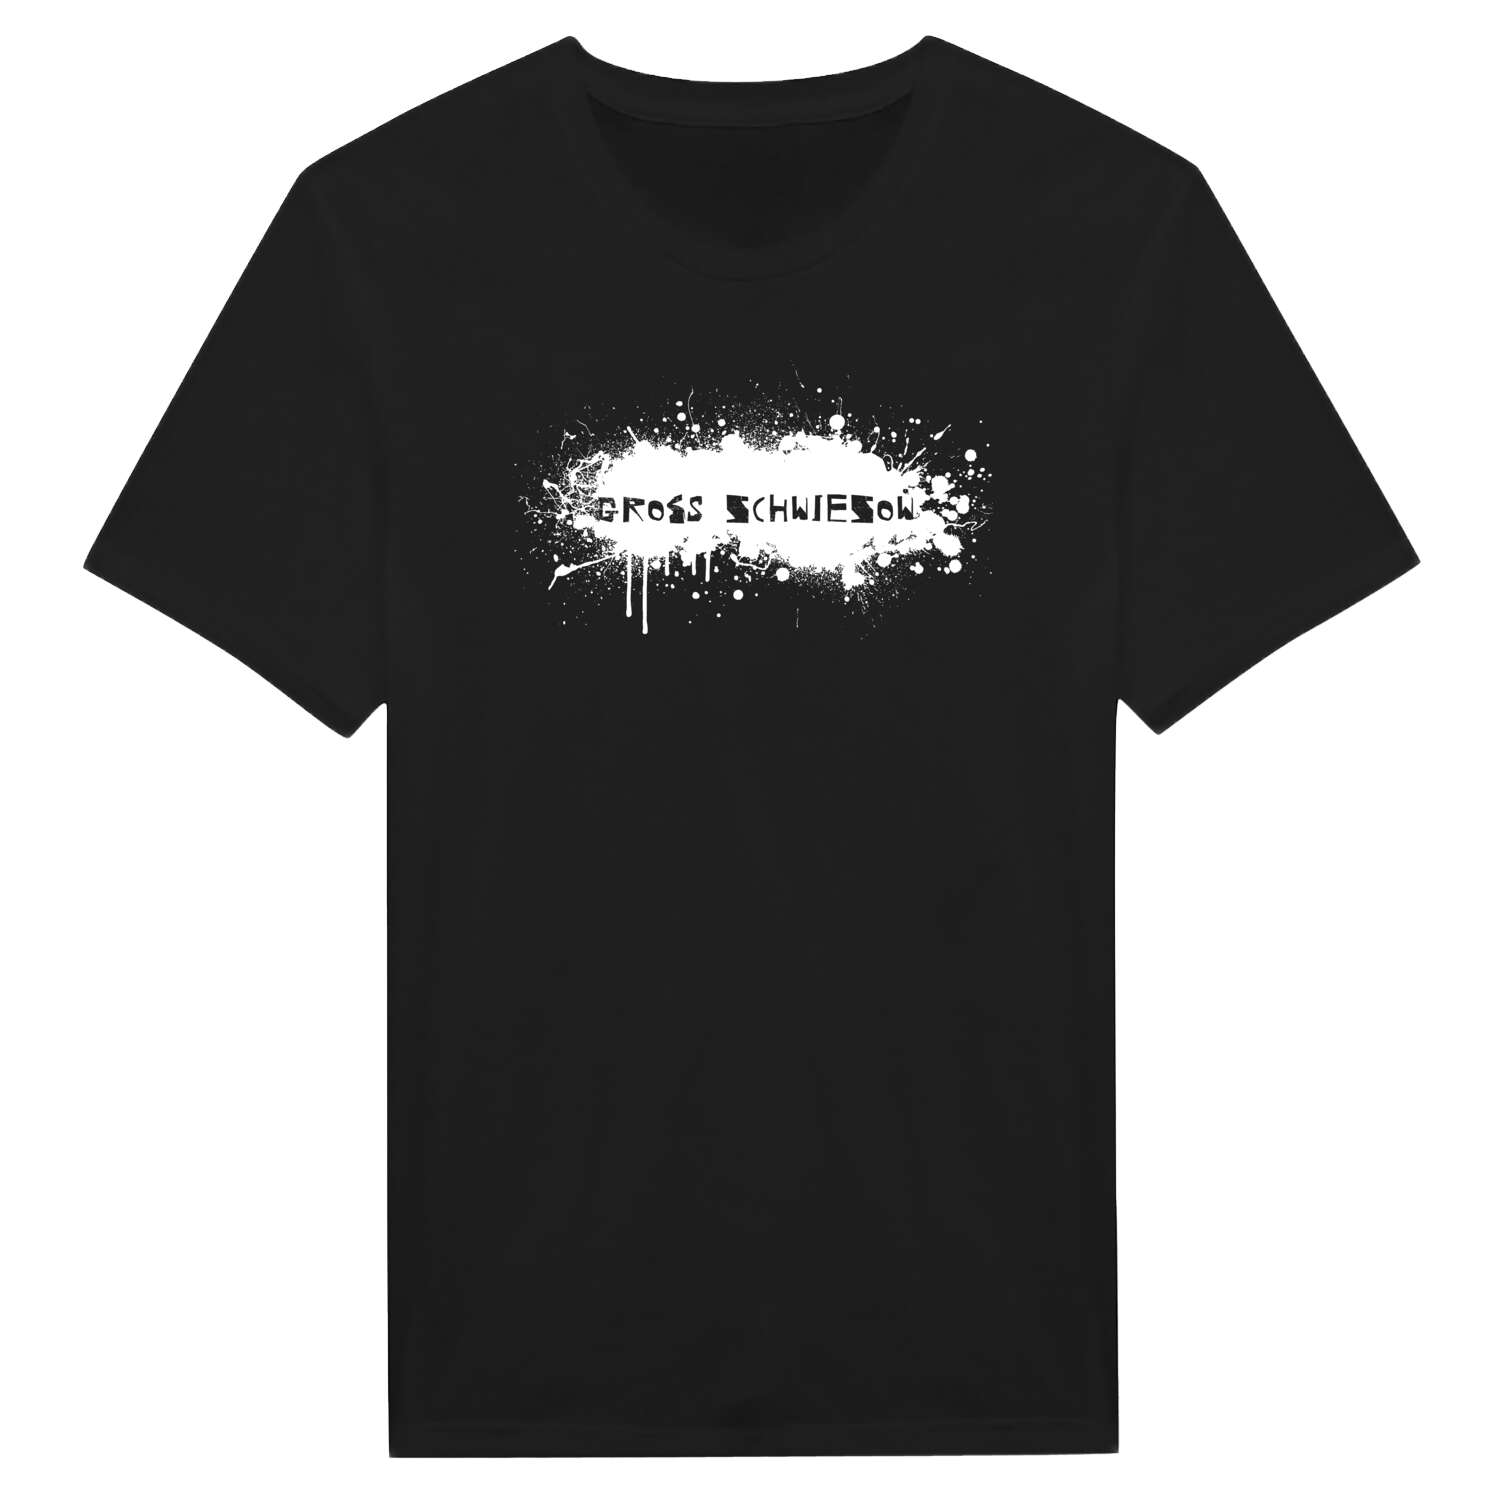 Groß Schwiesow T-Shirt »Paint Splash Punk«